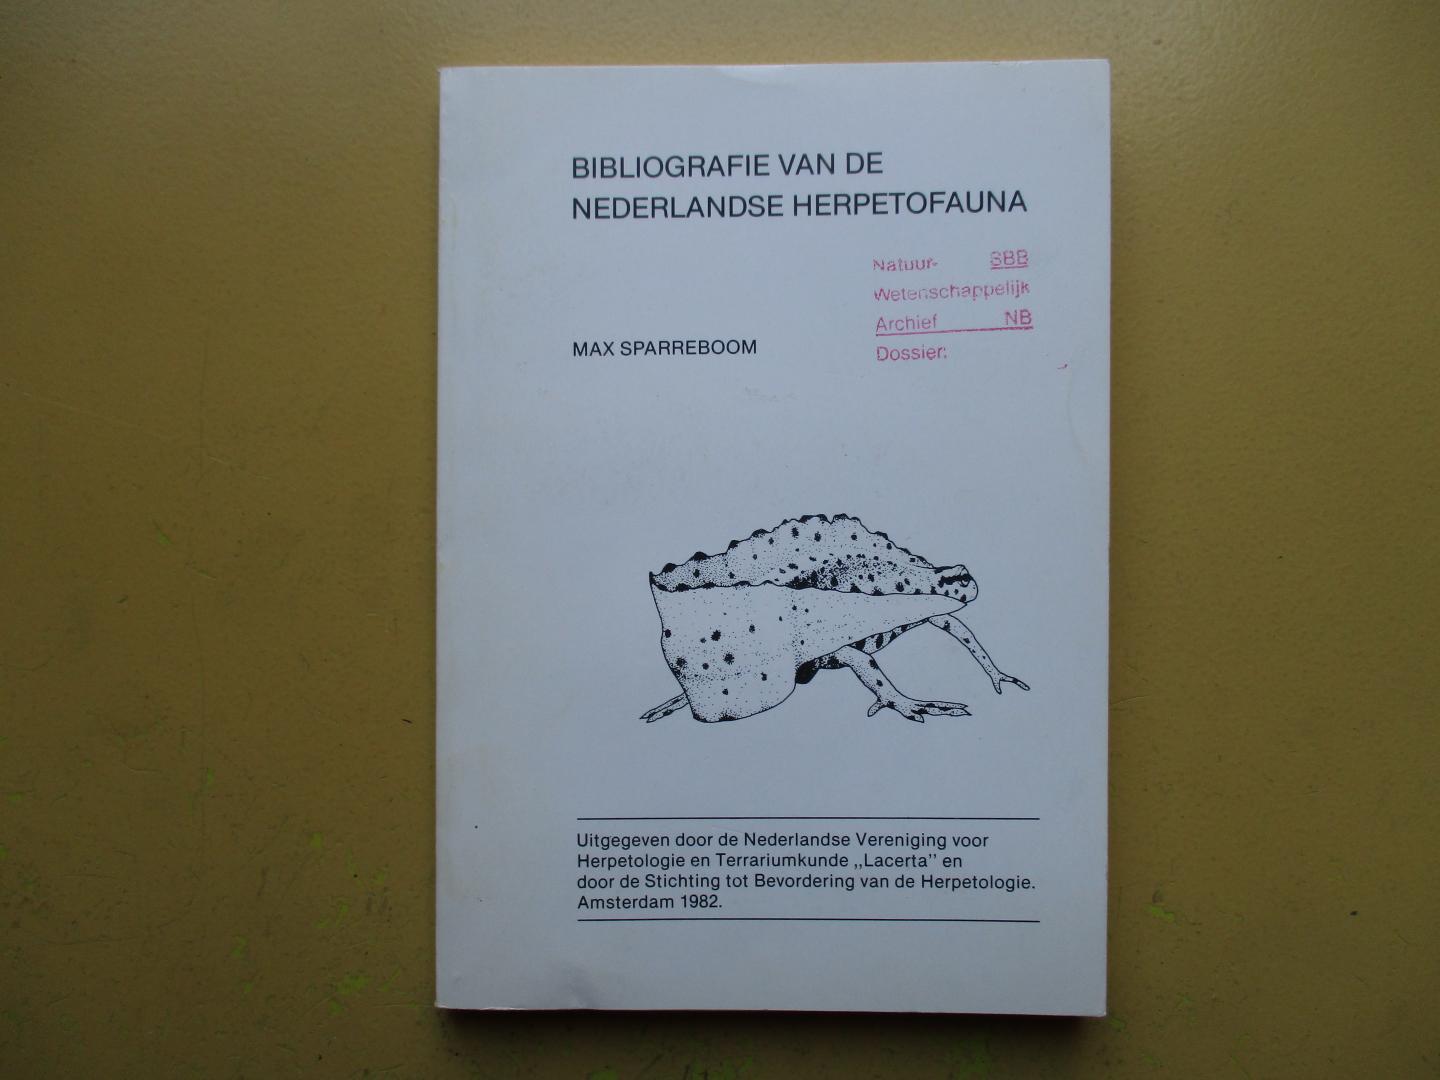 Sparreboom, Max - Bibliografie van de Nederlandse Herpetofauna